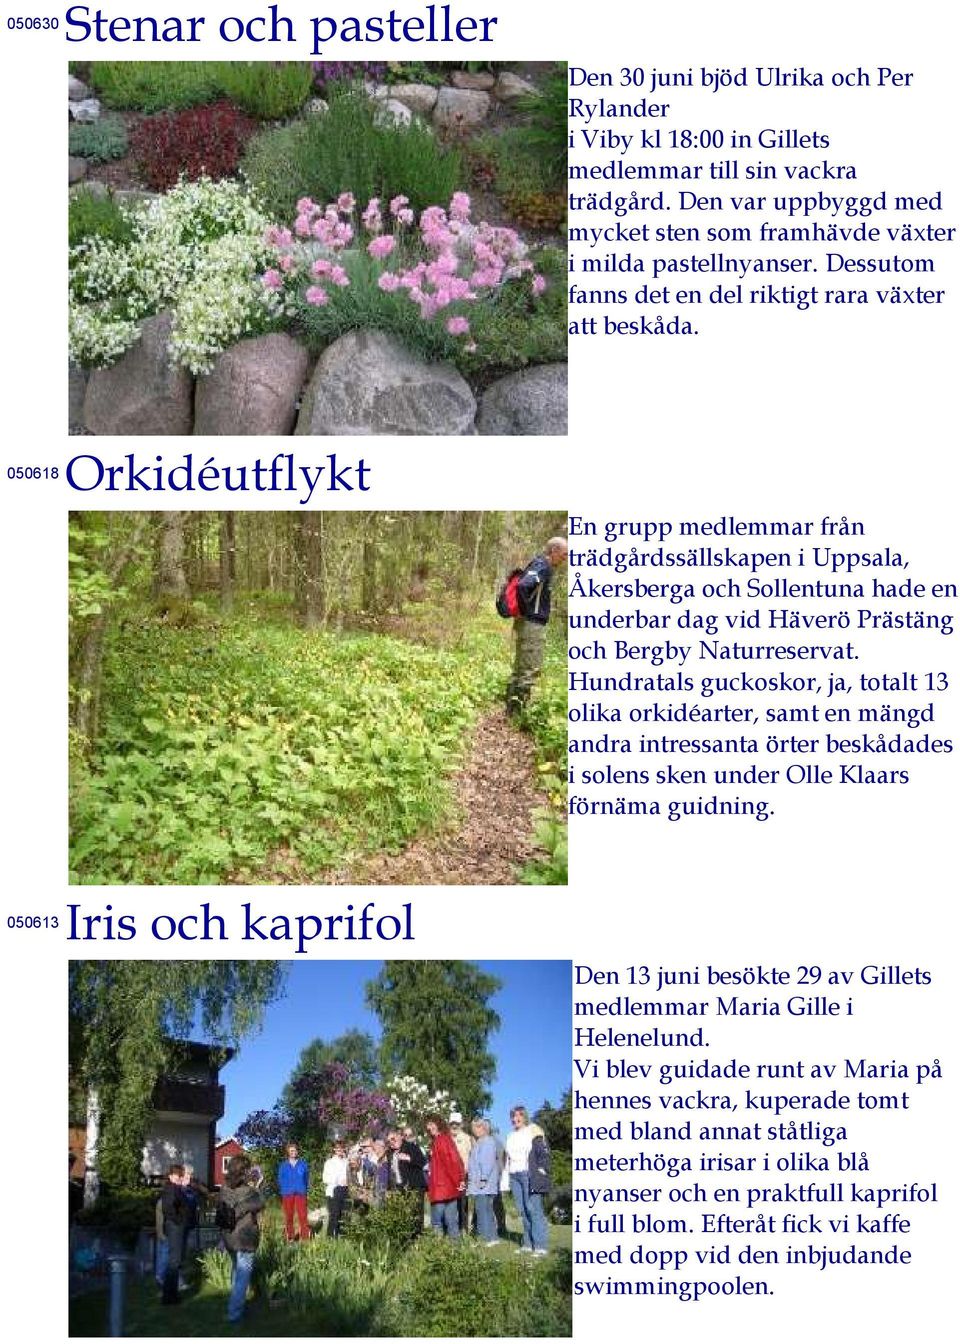 050618 Orkidéutflykt En grupp medlemmar från trädgårdssällskapen i Uppsala, Åkersberga och Sollentuna hade en underbar dag vid Häverö Prästäng och Bergby Naturreservat.